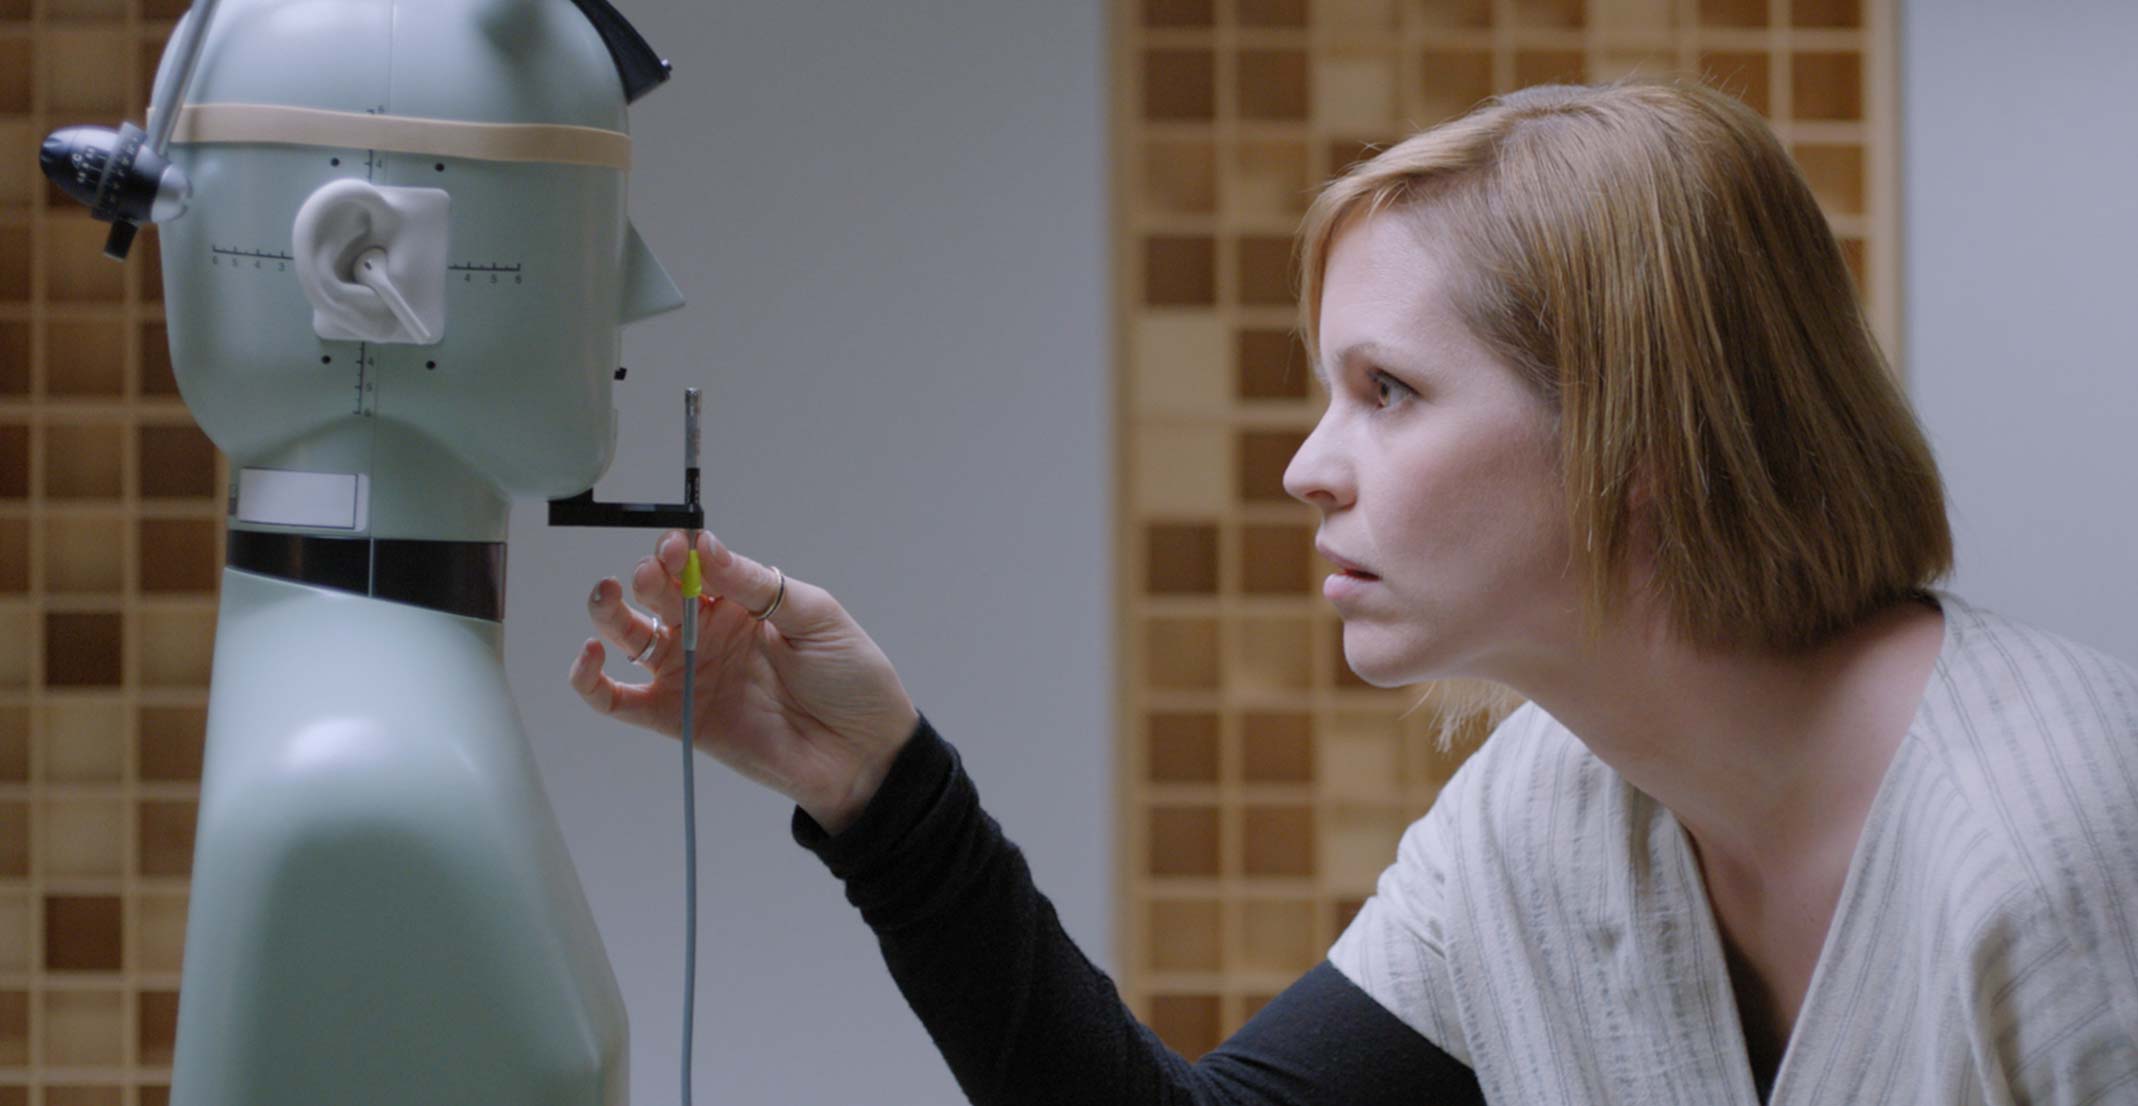  Suzie, gerente del equipo encargado de los prototipos acústicos de Apple, ajusta un micrófono frente a un maniquí en el laboratorio de ingeniería en Cupertino.